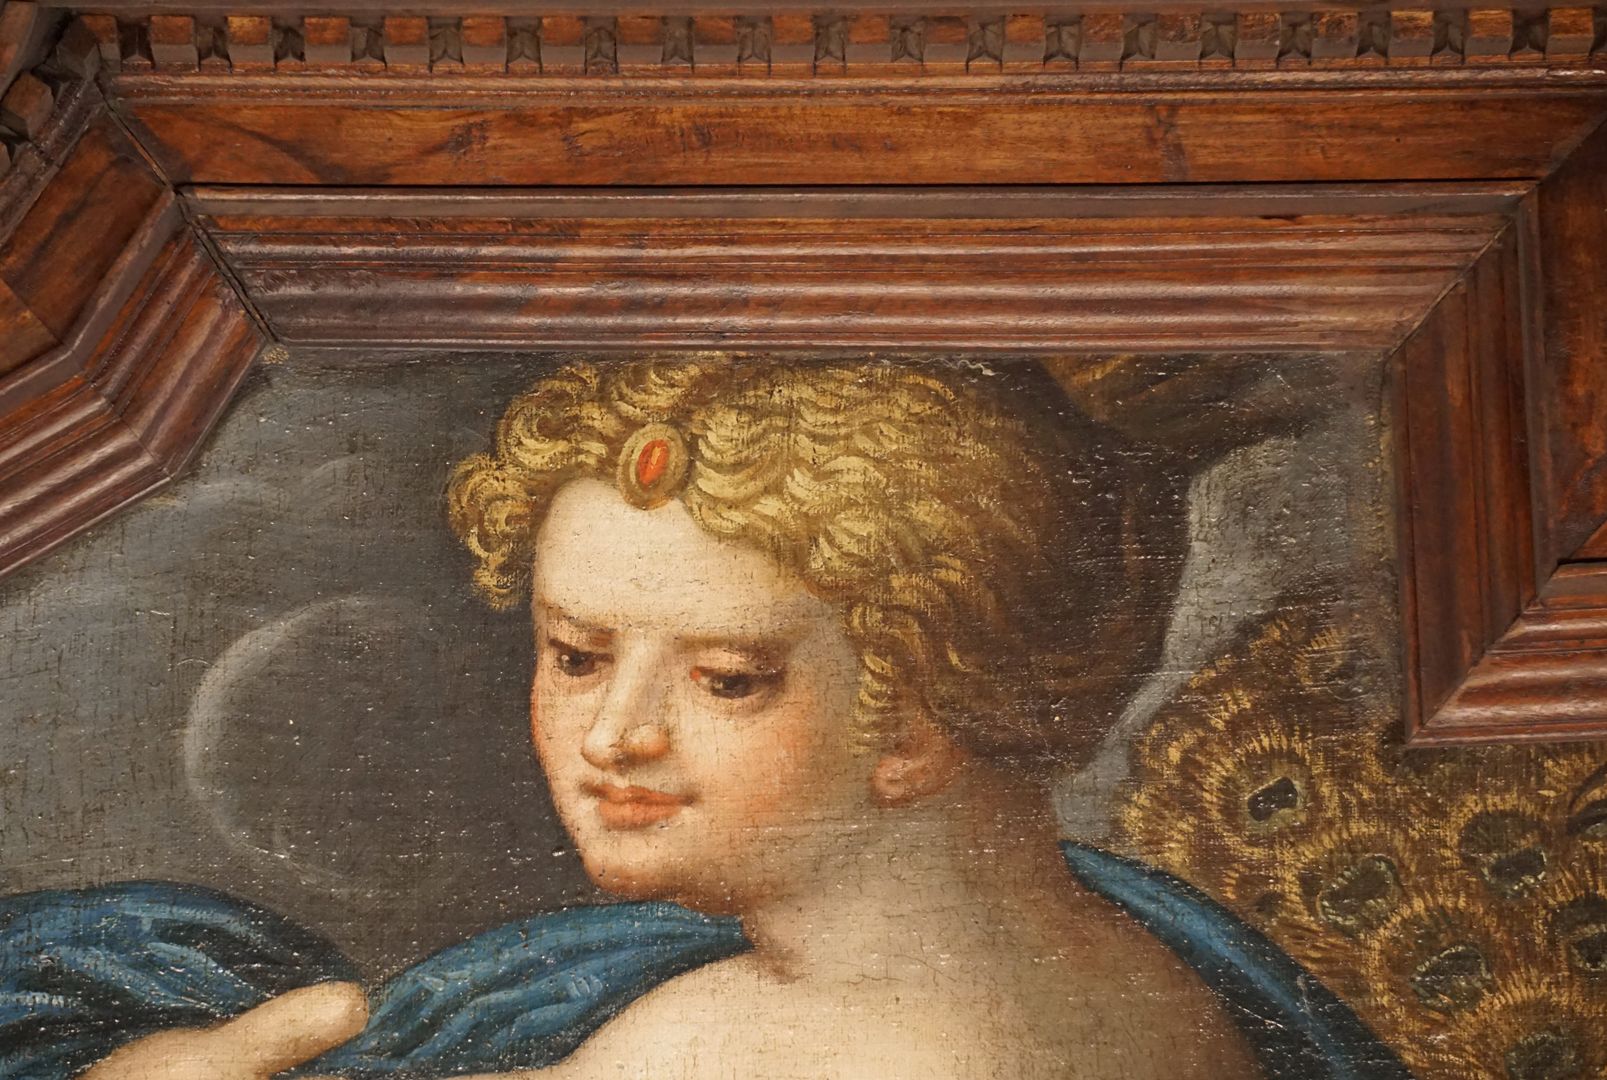 Decke des Schönen Zimmers Juno (Göttin der Ehe, Beschützerin der Frauen und der Familie. Dargestellt mit Herrschaftssymbolen und ihrem heiligen Vogel, dem Pfau), Detailansicht